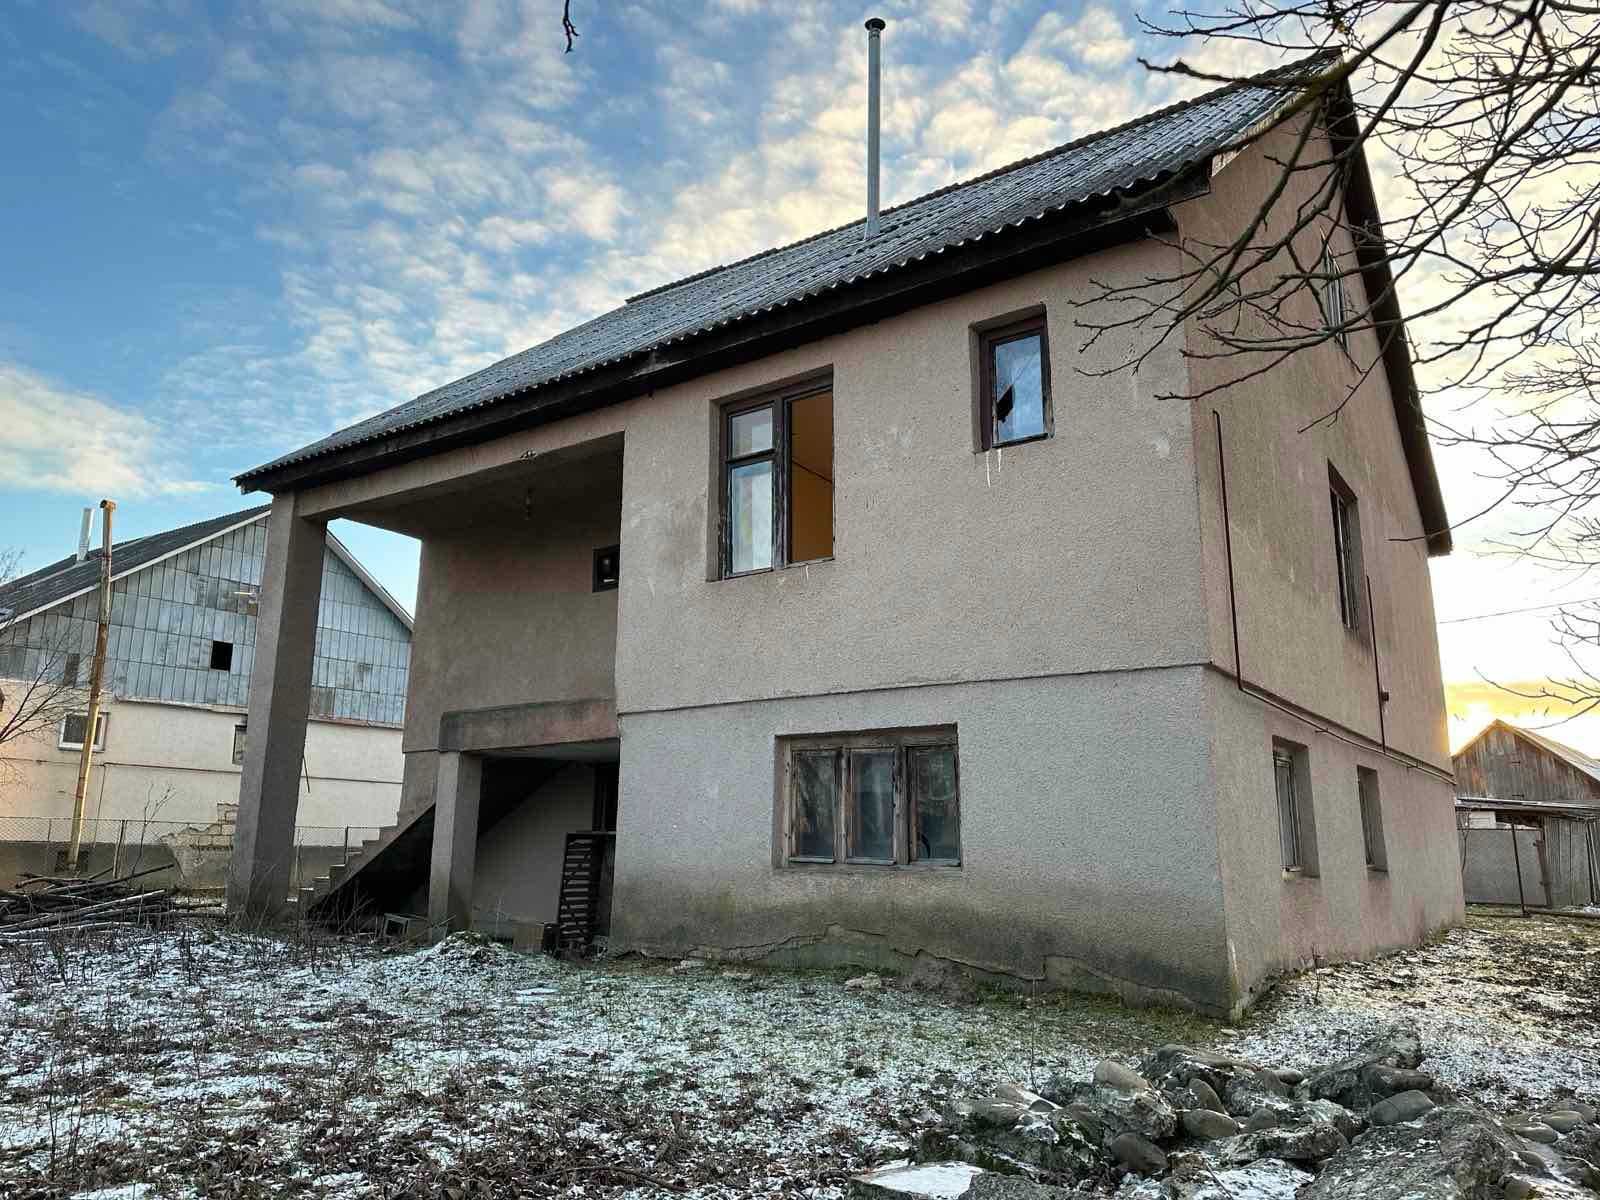 Продається будинок в с. Вонігово